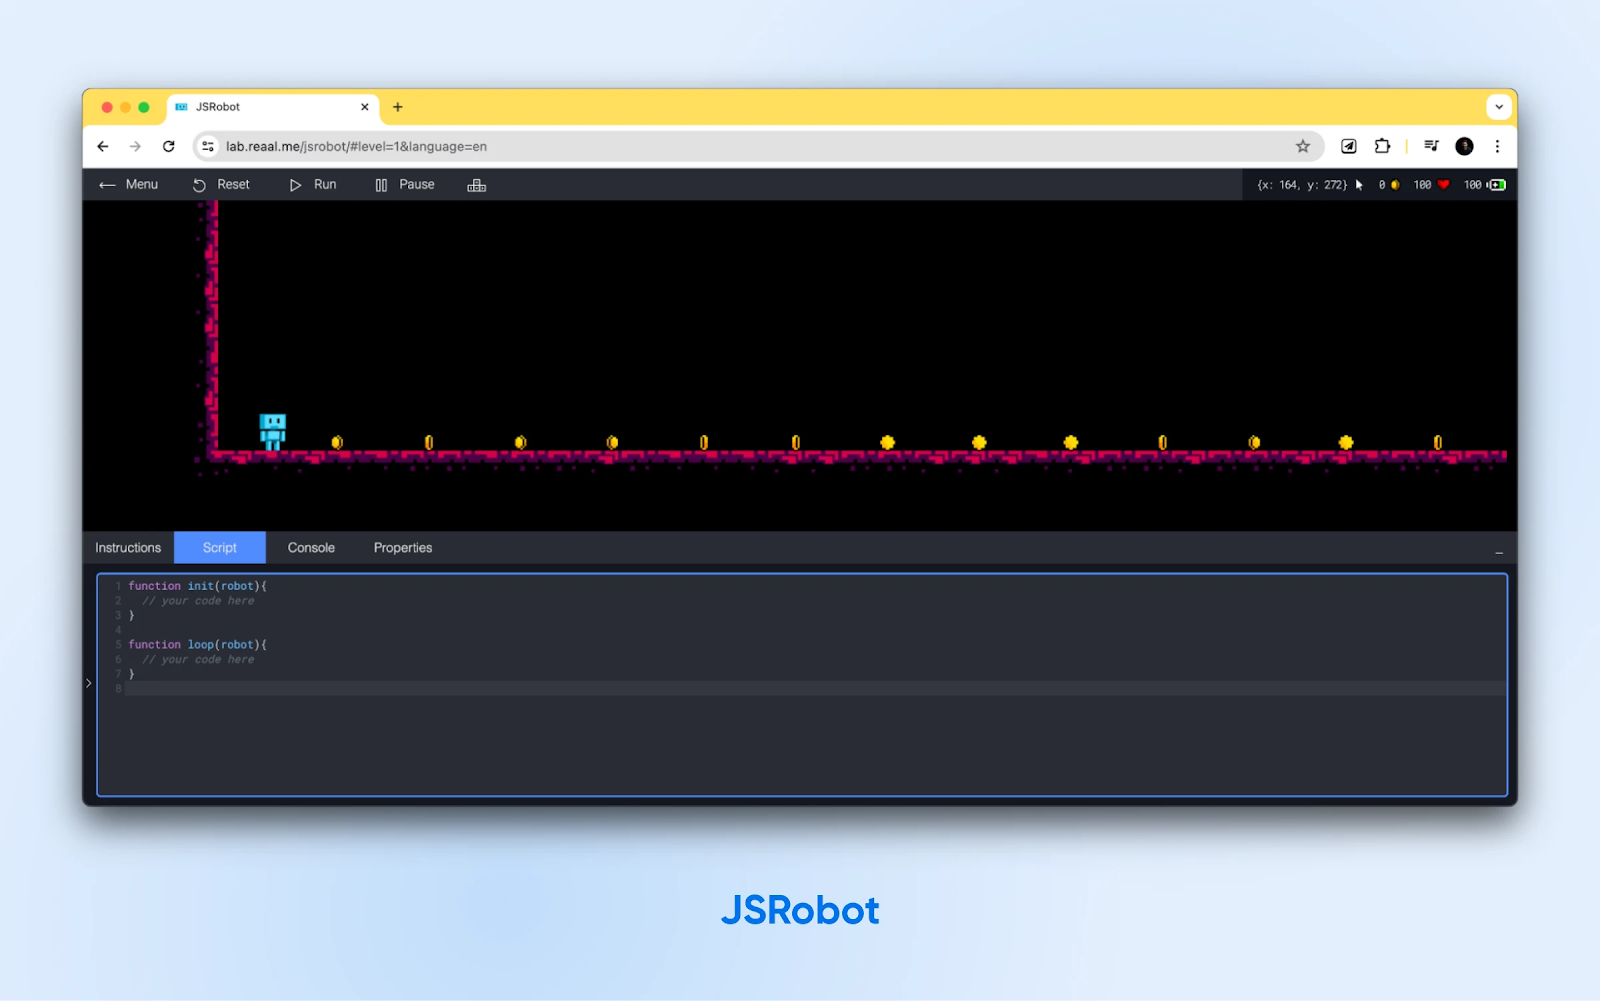 JSRobot abierto con "Script" y un pequeño robot azul parado en la línea de salida con obstáculos delante.